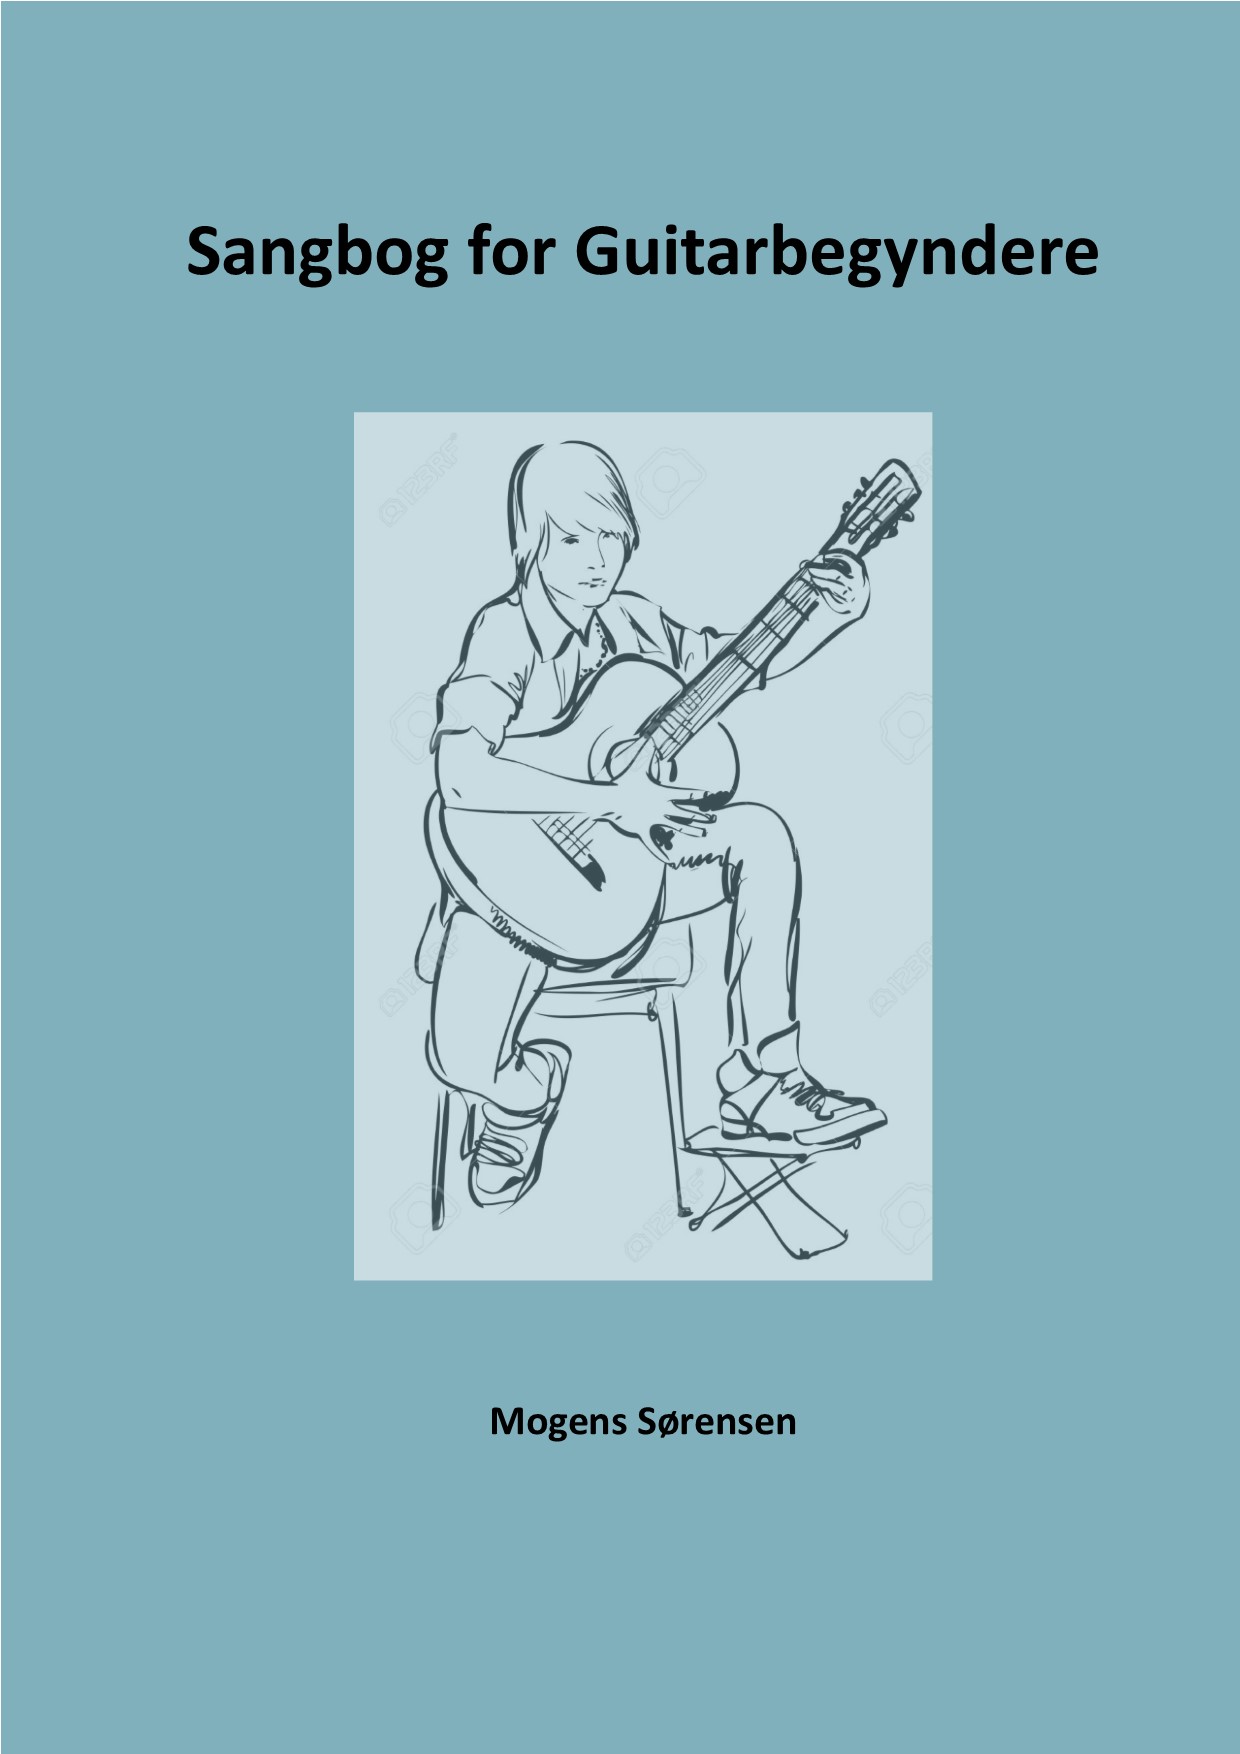 Forsidebillede til Sangbog for guitarbegyndere